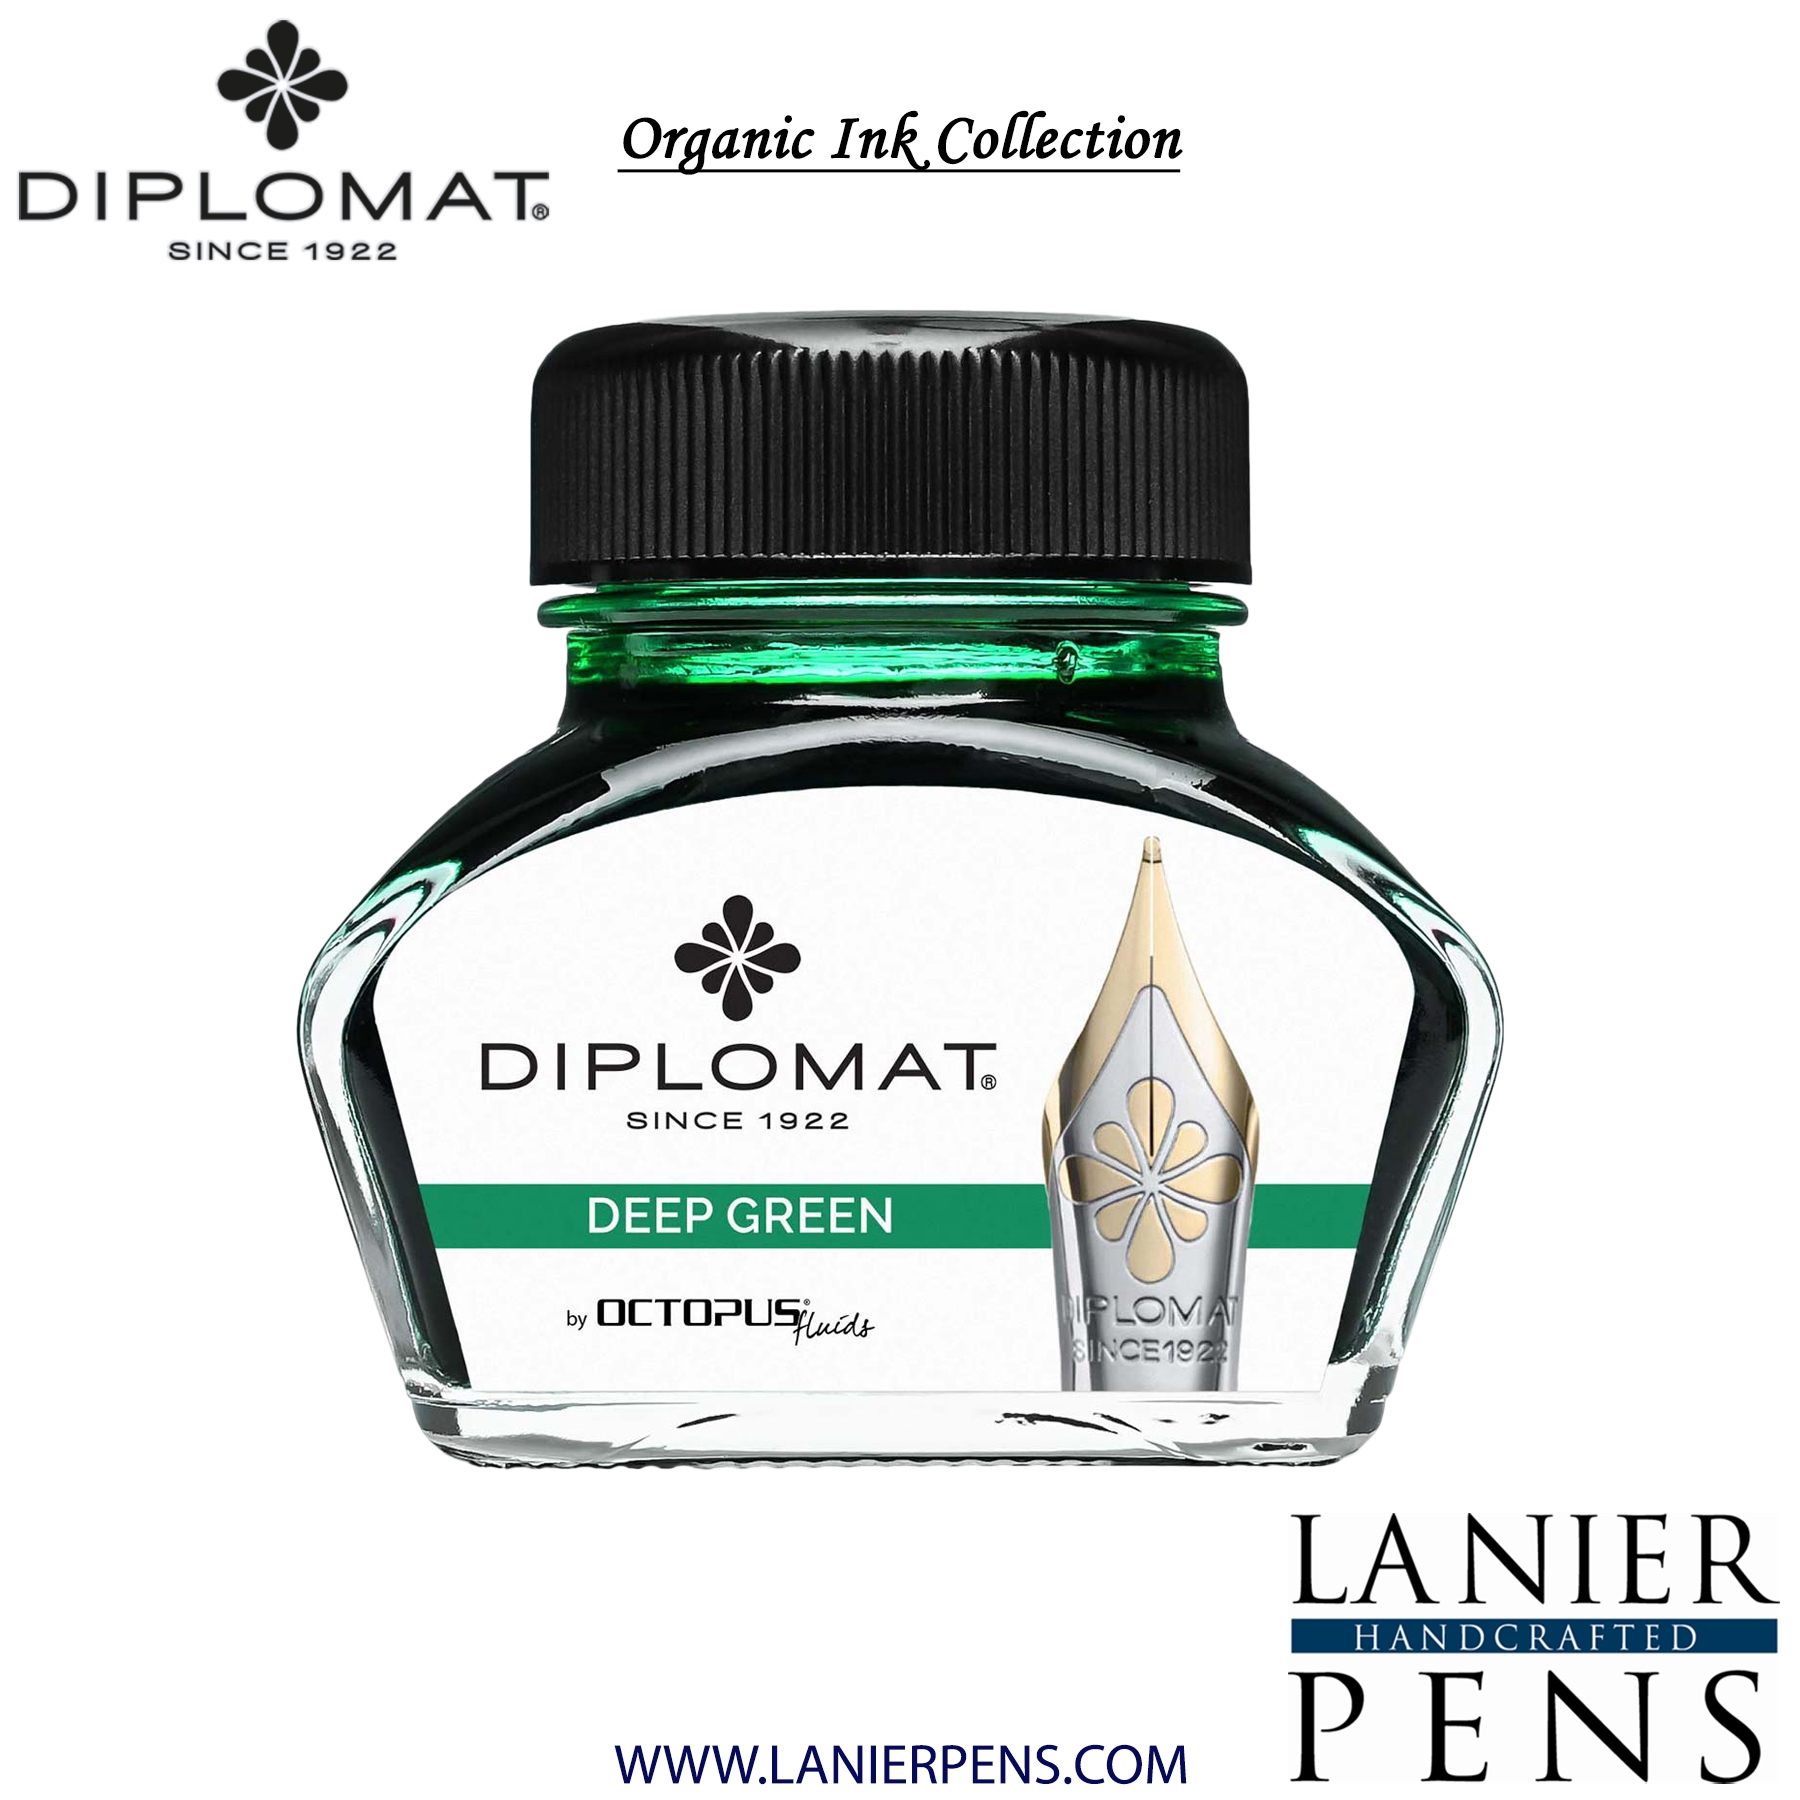 Diplomat Deep Green Ink Bottle, 30ml by Lanier Pens, lanierpens, lanierpens.com, wndpens, WOOD N DREAMS, Pensbylanier